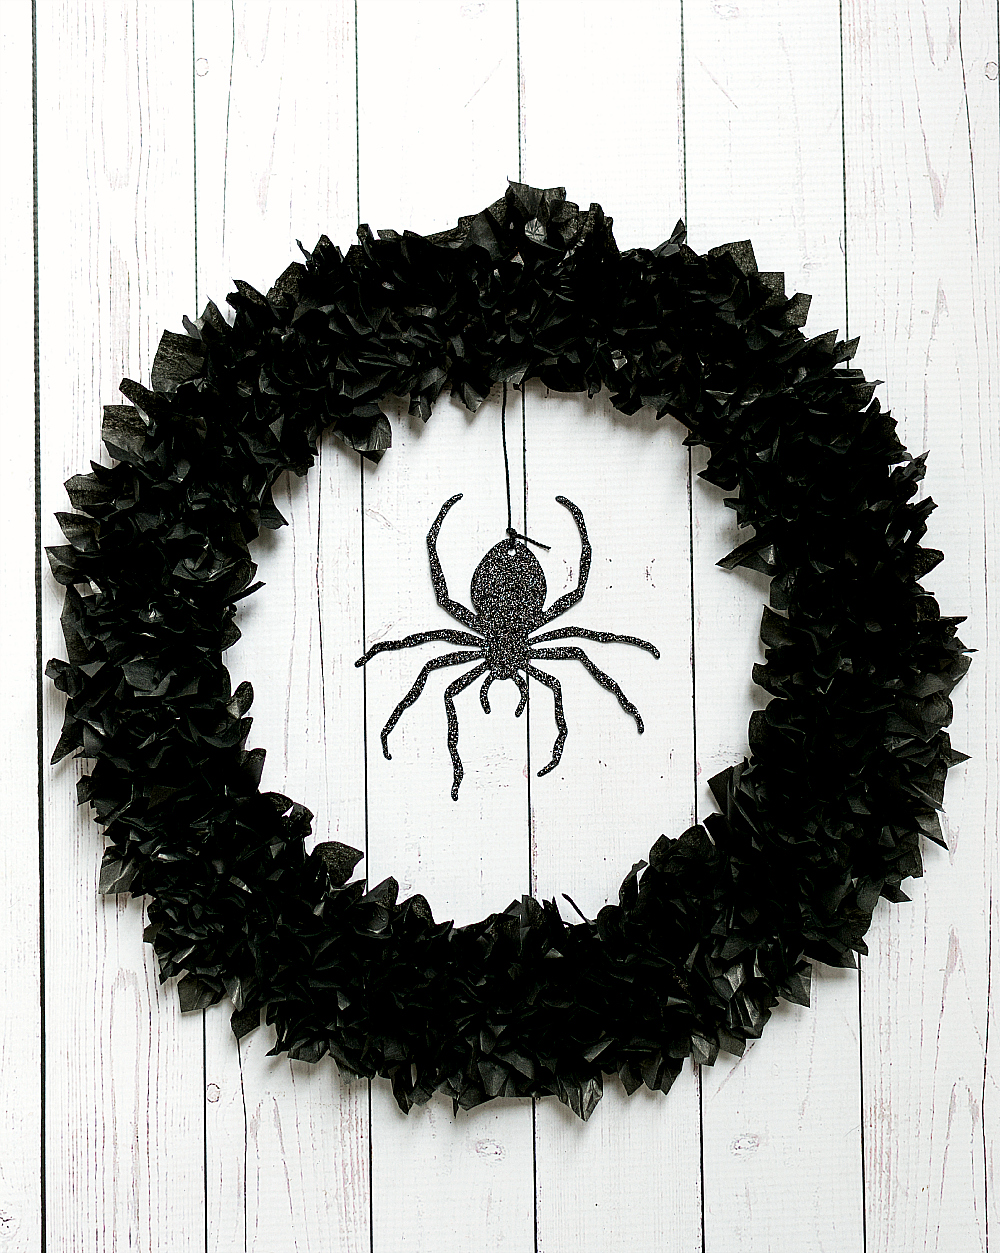 Halloween Wreath Ideas: Spider Wreath with Tissue Paper